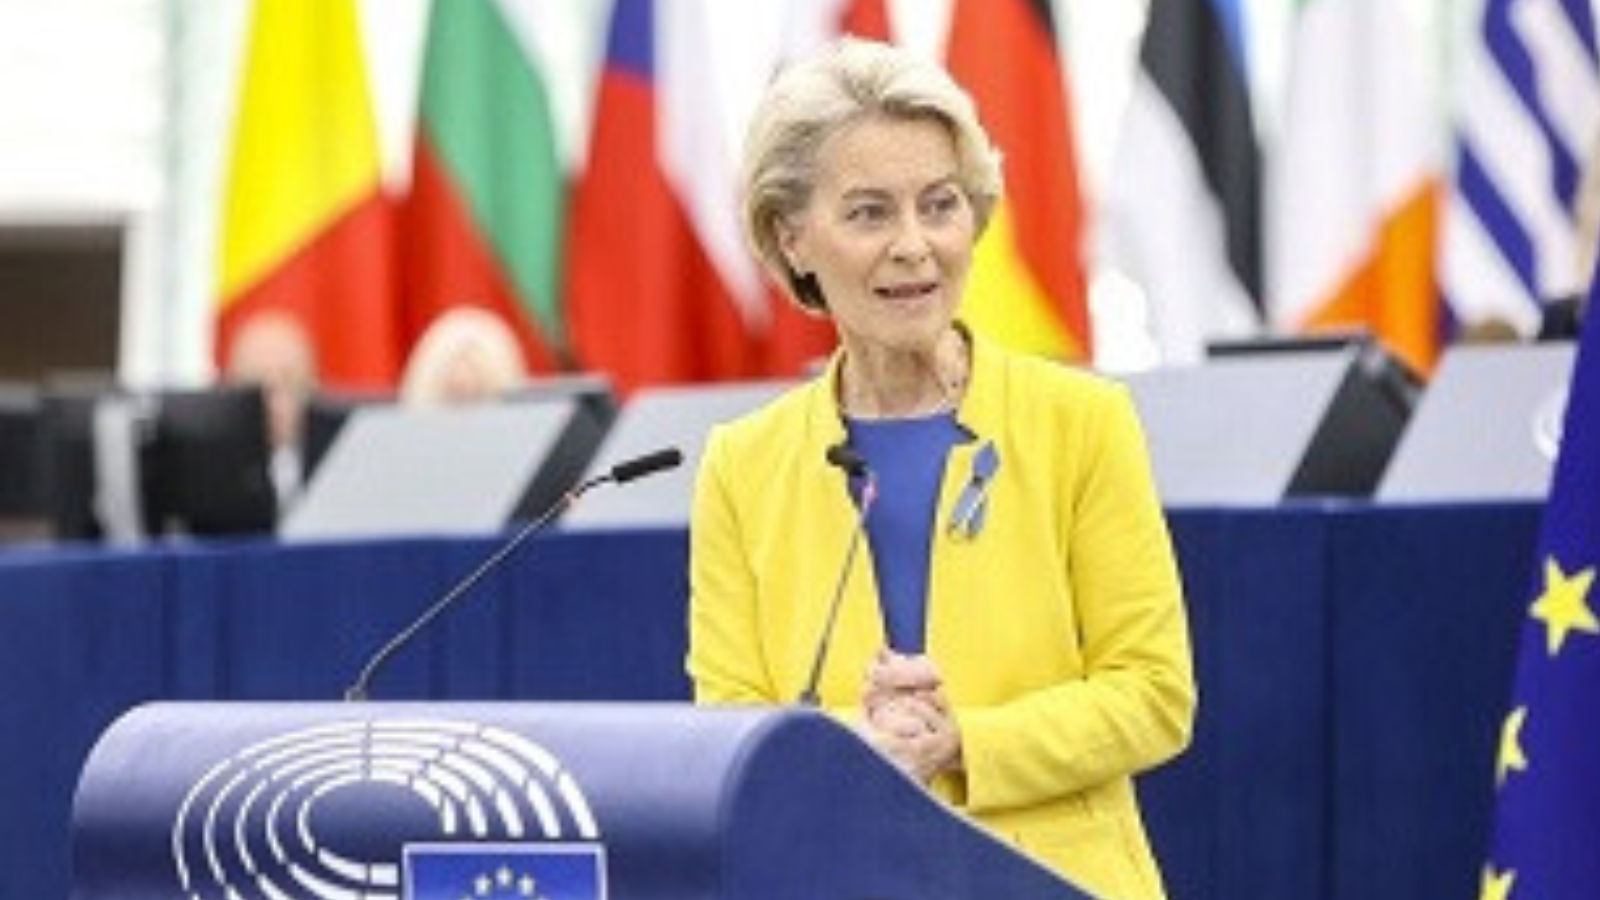 Fotografía de la presidenta de la Comisión Europea, Ursula Von der Leyen, en una comparecencia con las banderas de los países de fondo. Viste una chaqueta de color amarillo.